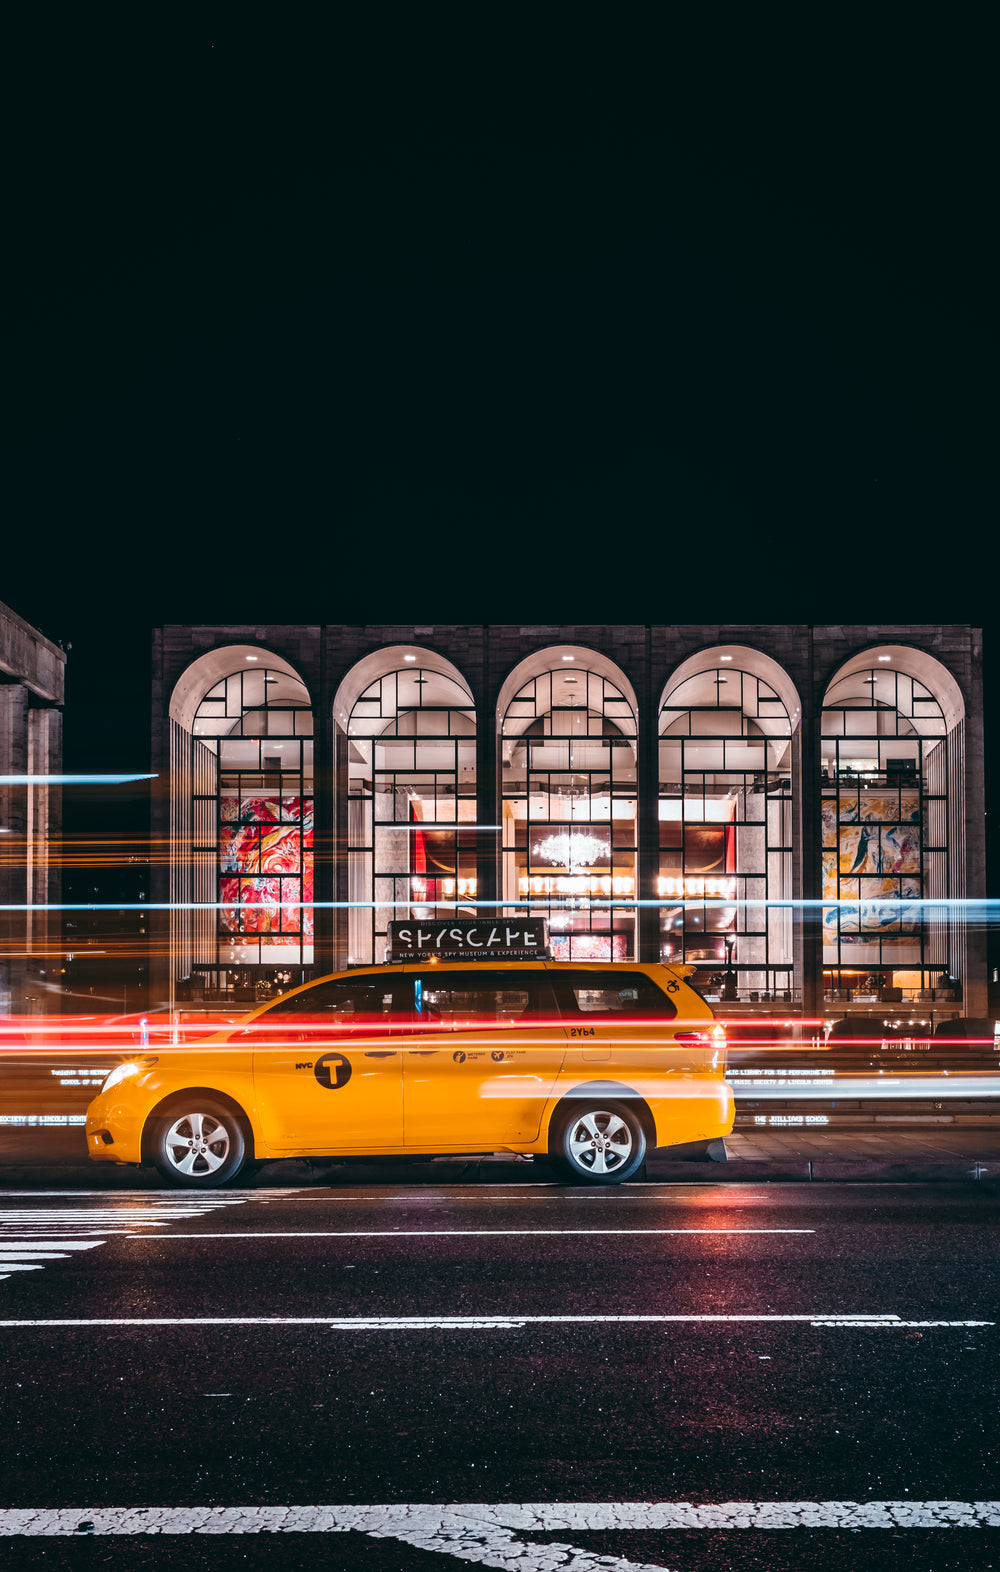 出租车晚上比赛过去城市美术馆